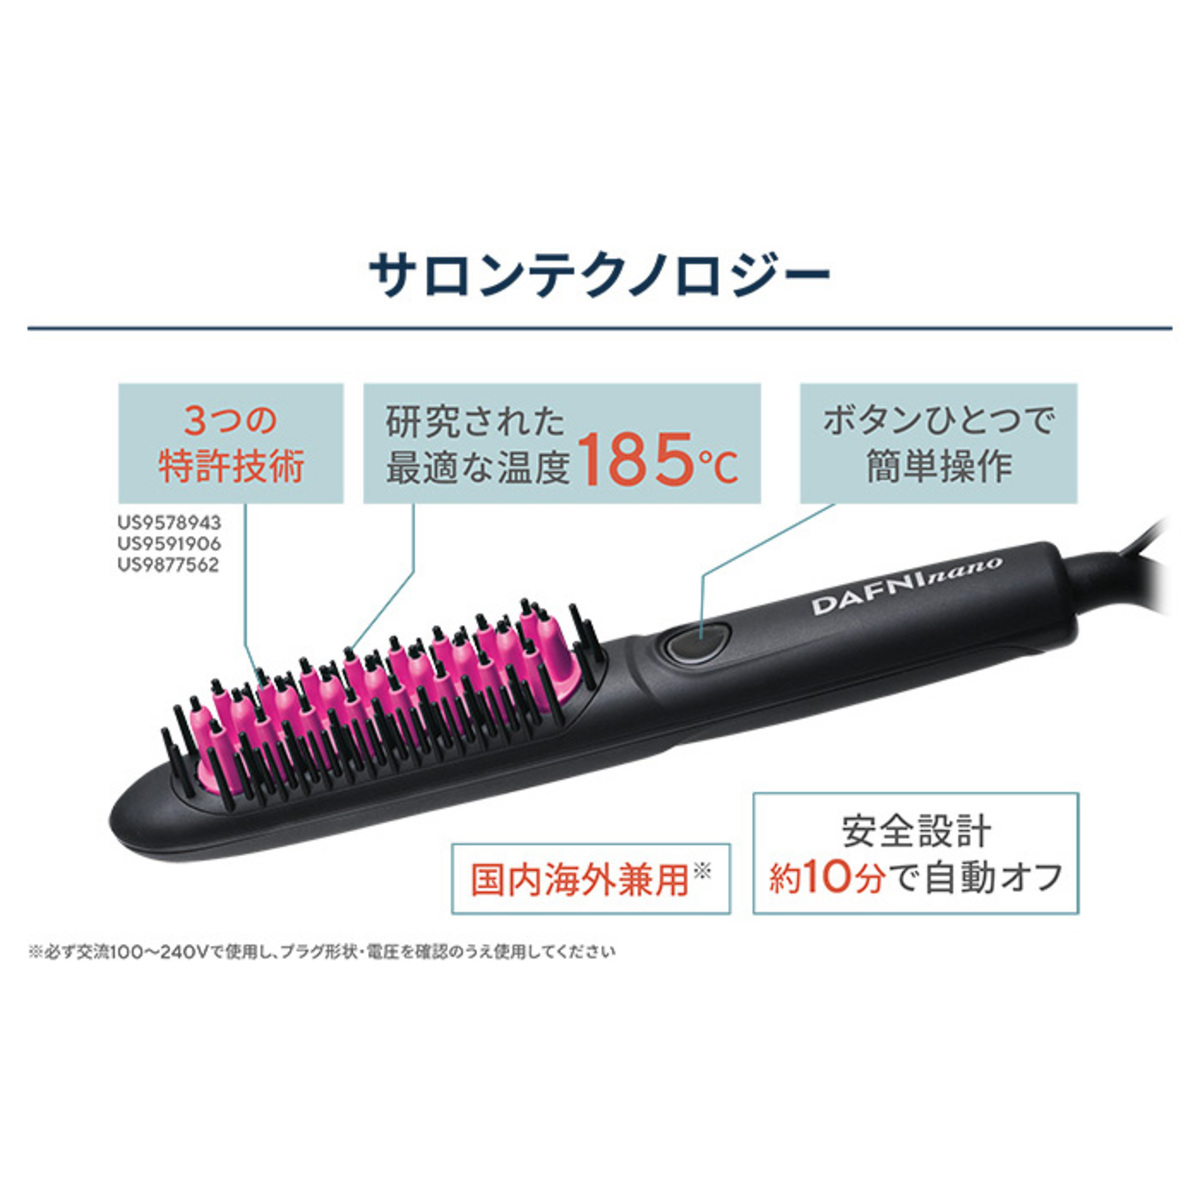 ブラシ型ヘアアイロン「ダフニNANO」【ピンク】タオルP付セット ダフニ 